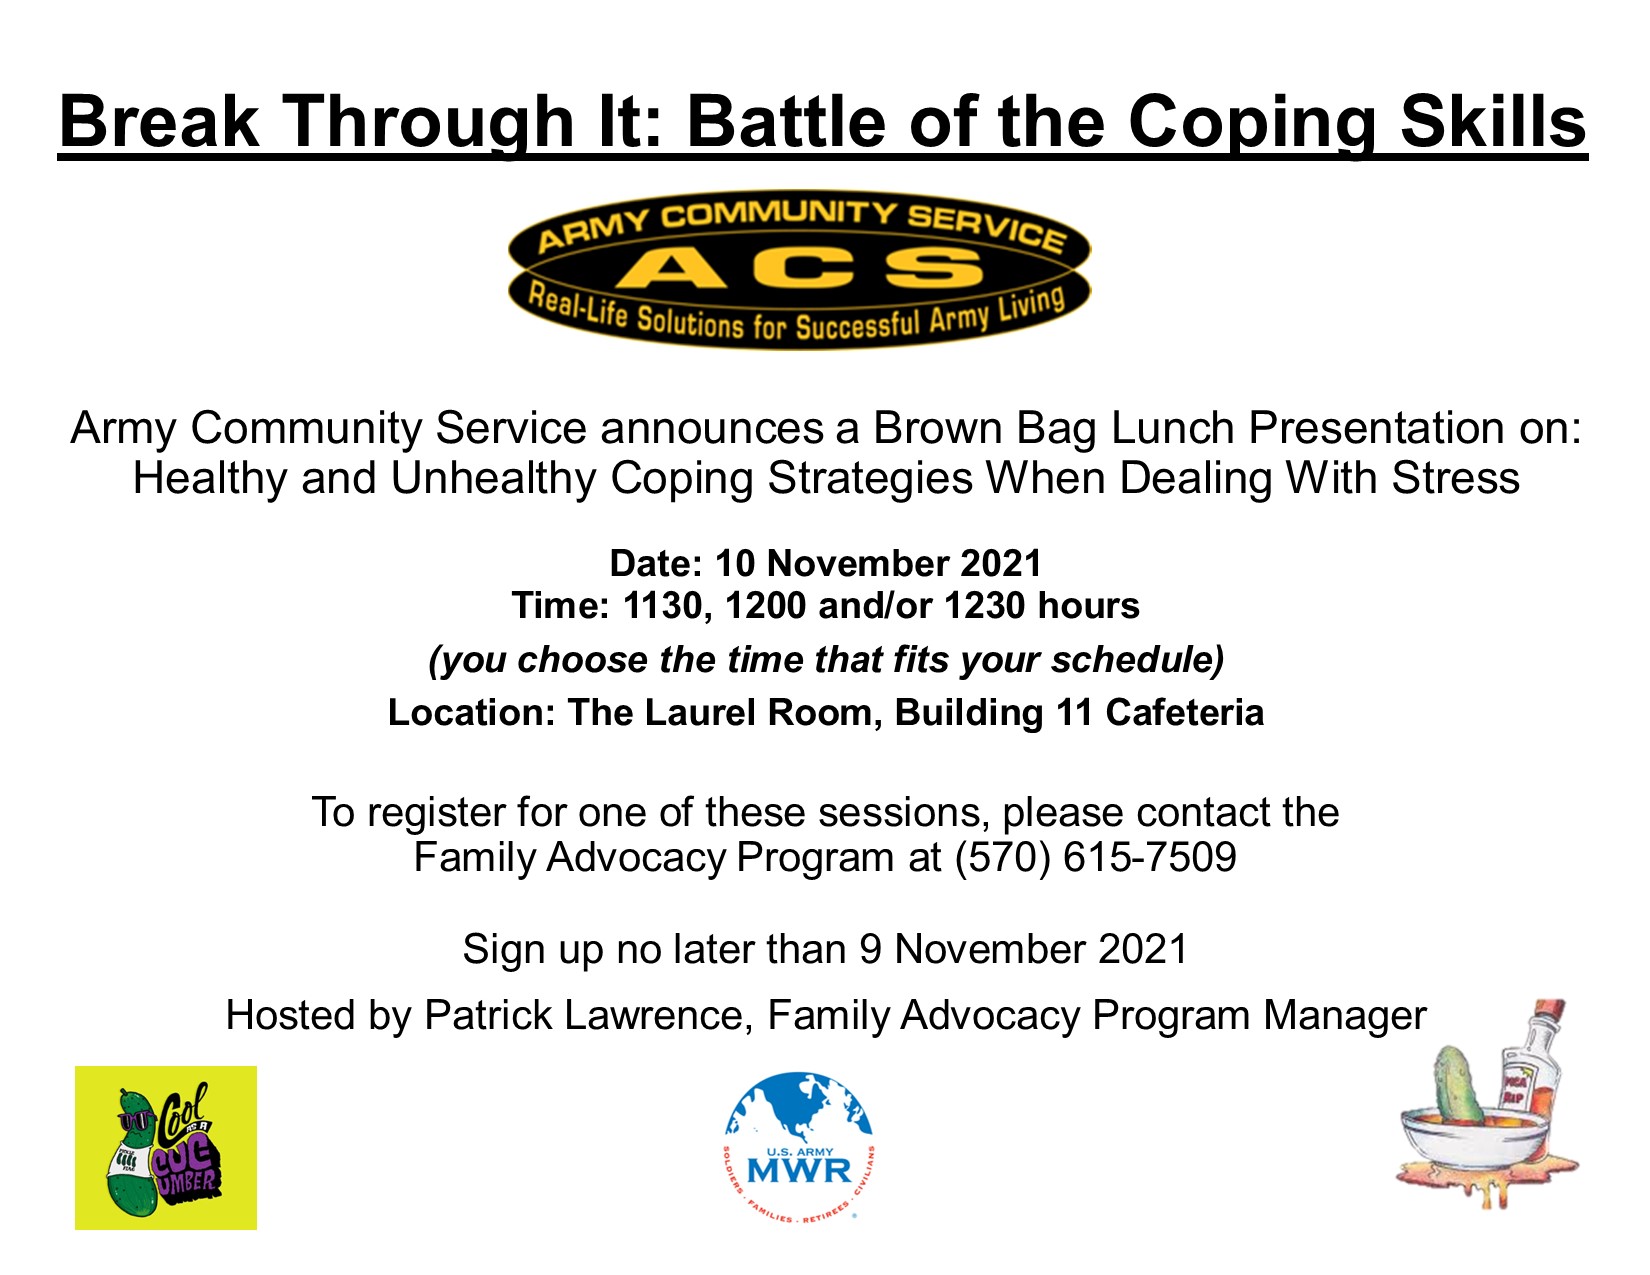 Coping Skills Seminar Flyer Nov 10.jpg